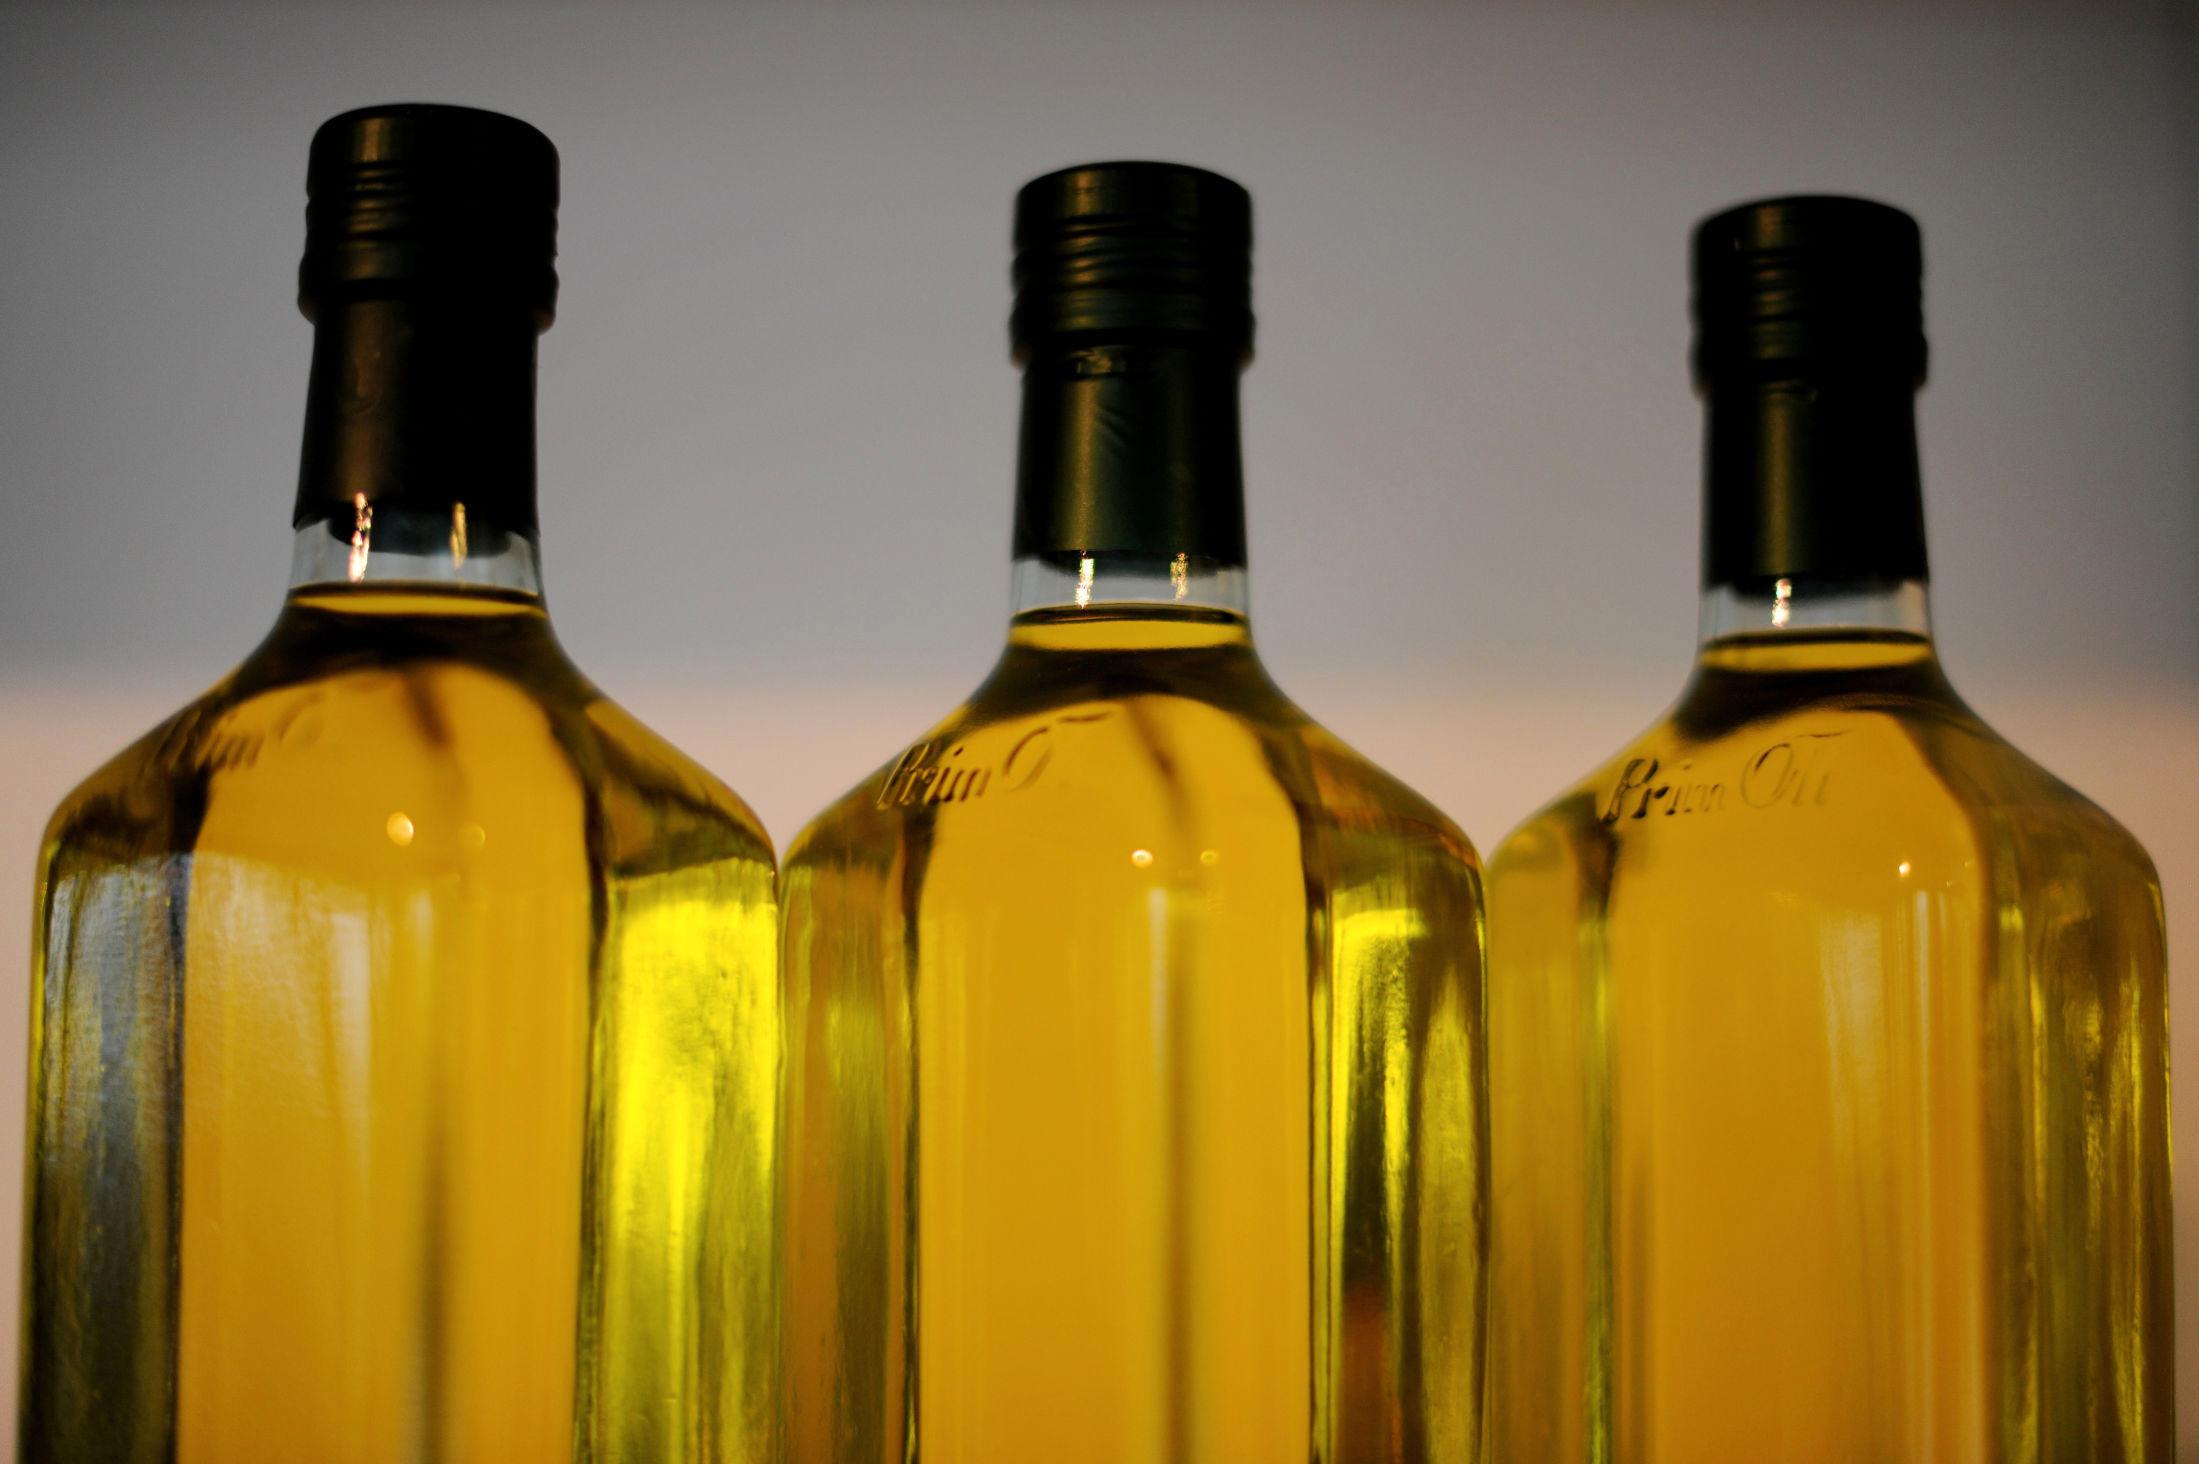 JEVN TEMPERATUR: Olivenolje bør ikke utsettes for varme, men heller ikke kulde. Unngå å ha den ved kjøkkenvinduet om sommeren når solen steker. Foto: Frank May / NTB scanpix